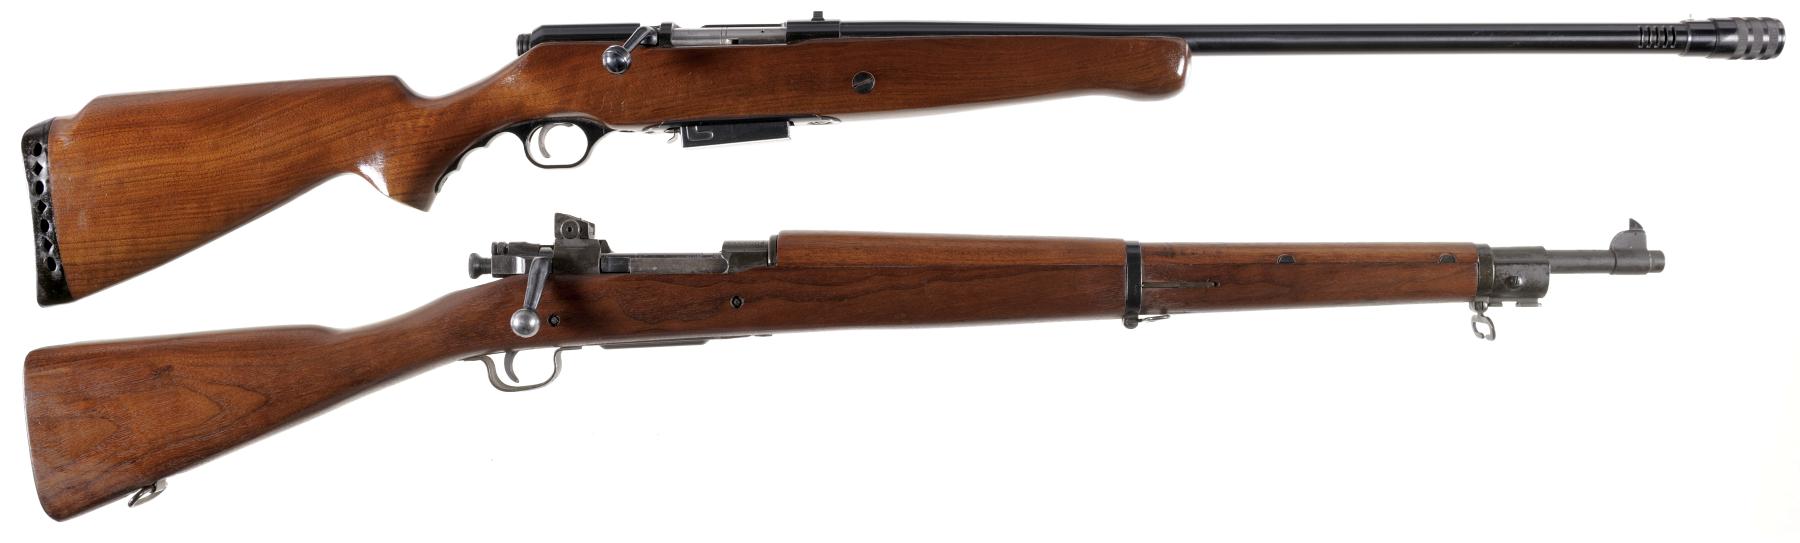 Two Bolt Action Long Guns -A) Mossberg Model 195K-A Shotgun.